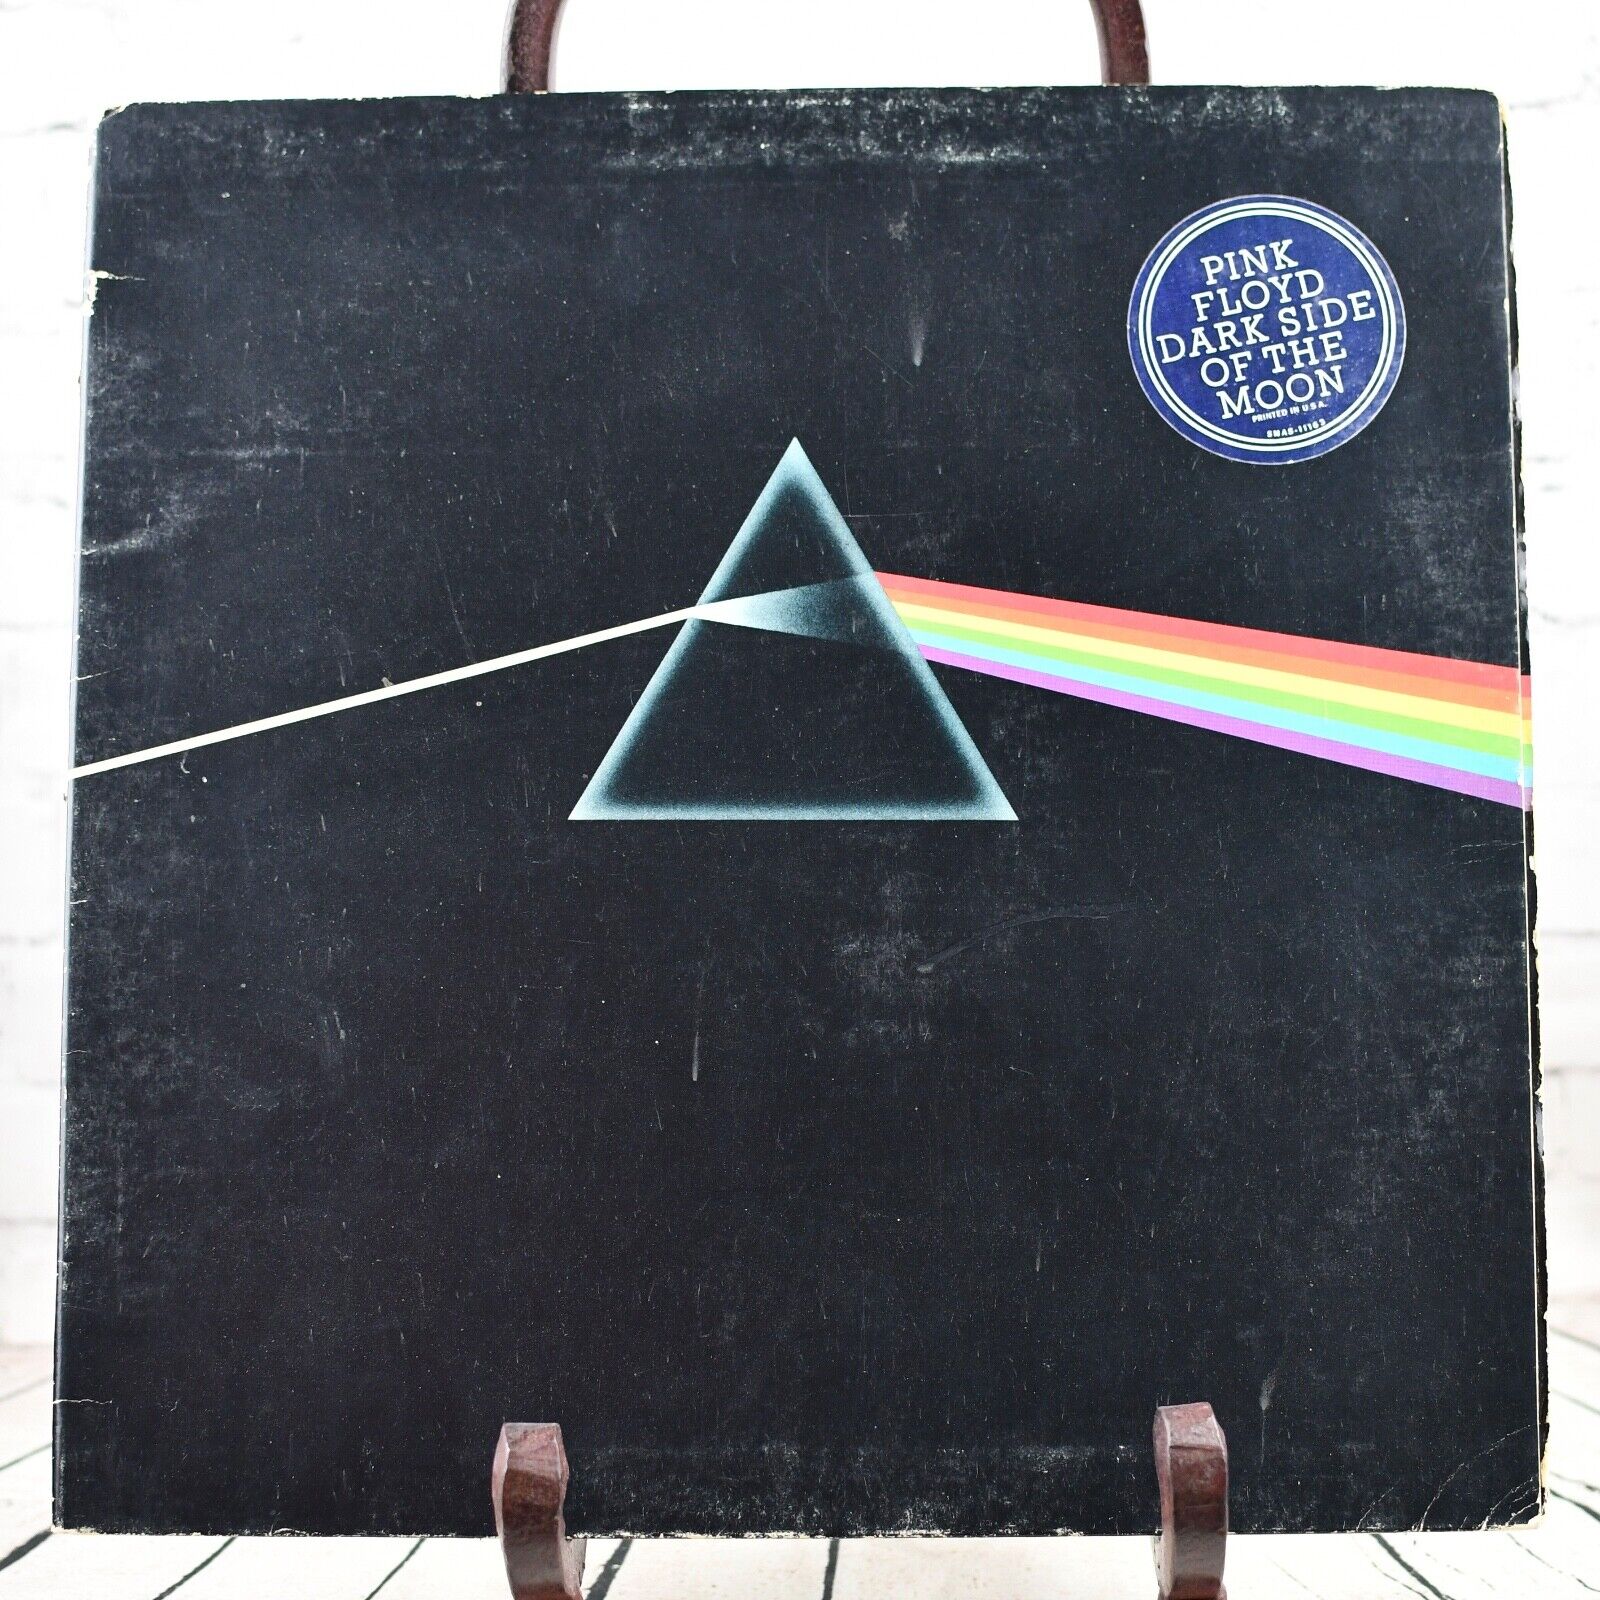 Pink Floyd - The Dark Side Of The Moon, 12" Vinyl / LP, Harvest, 1973